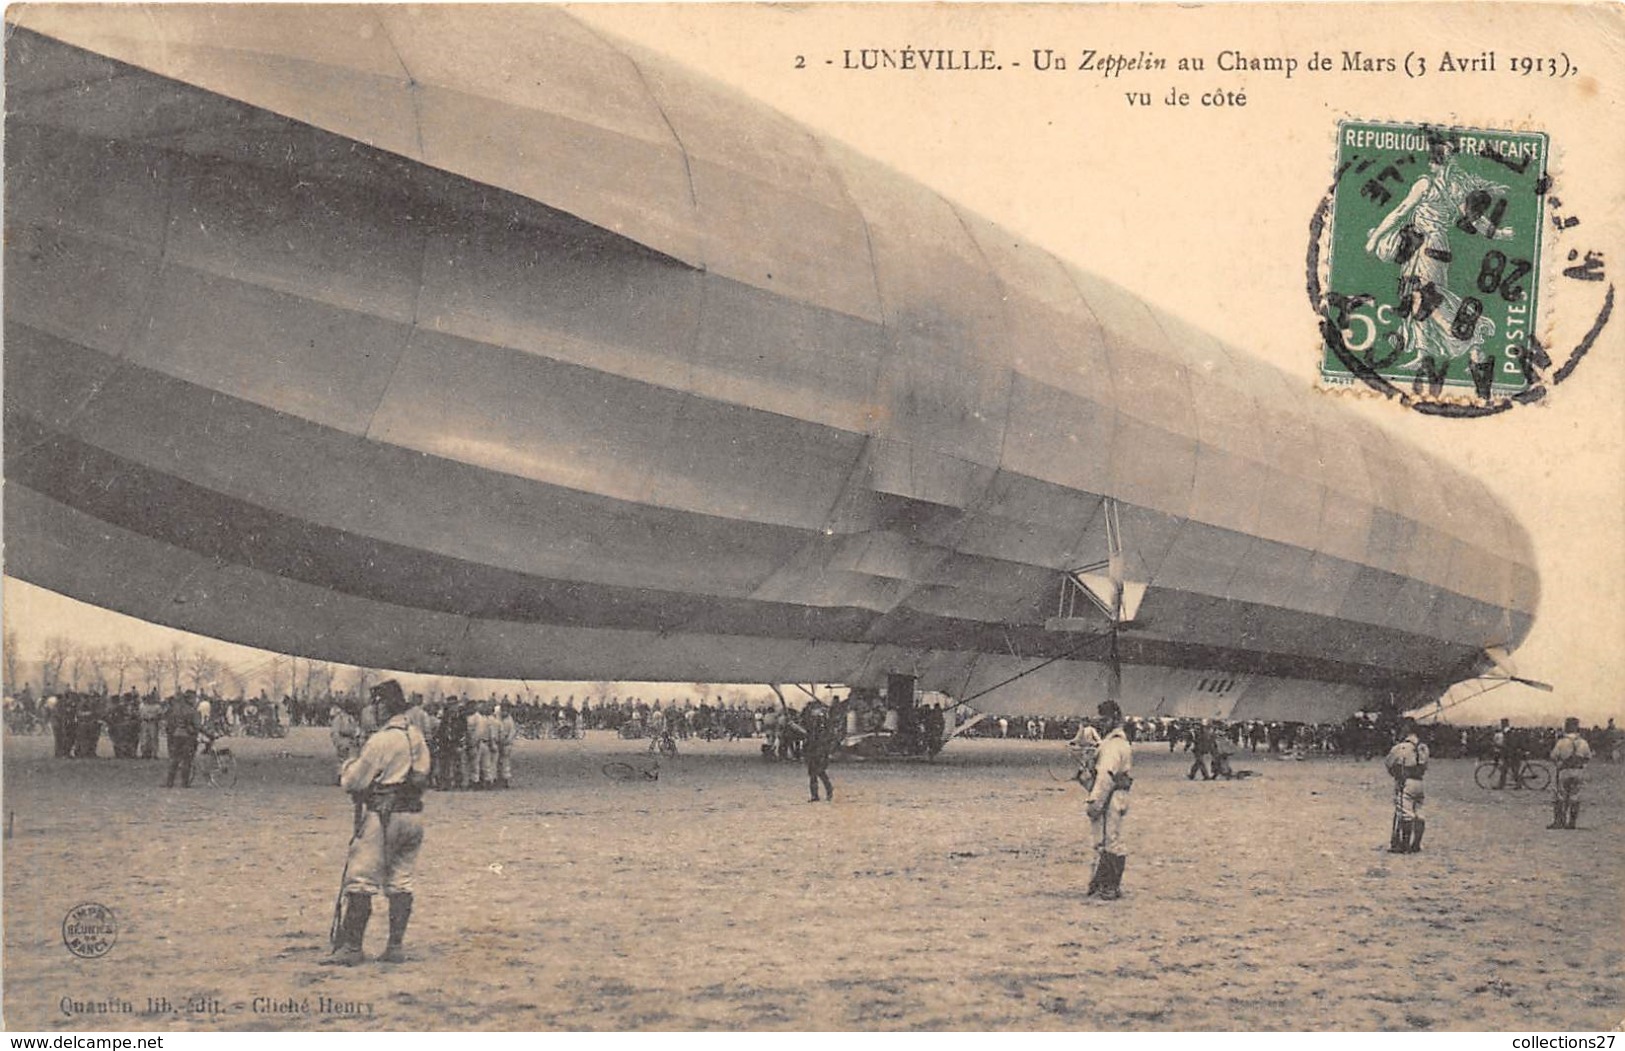 54-LUNEVILLE- LE ZEPPELIN, N° 4 ATTERIT AU CHAMP DE MARS 1913, VUE DE COTE - Luneville